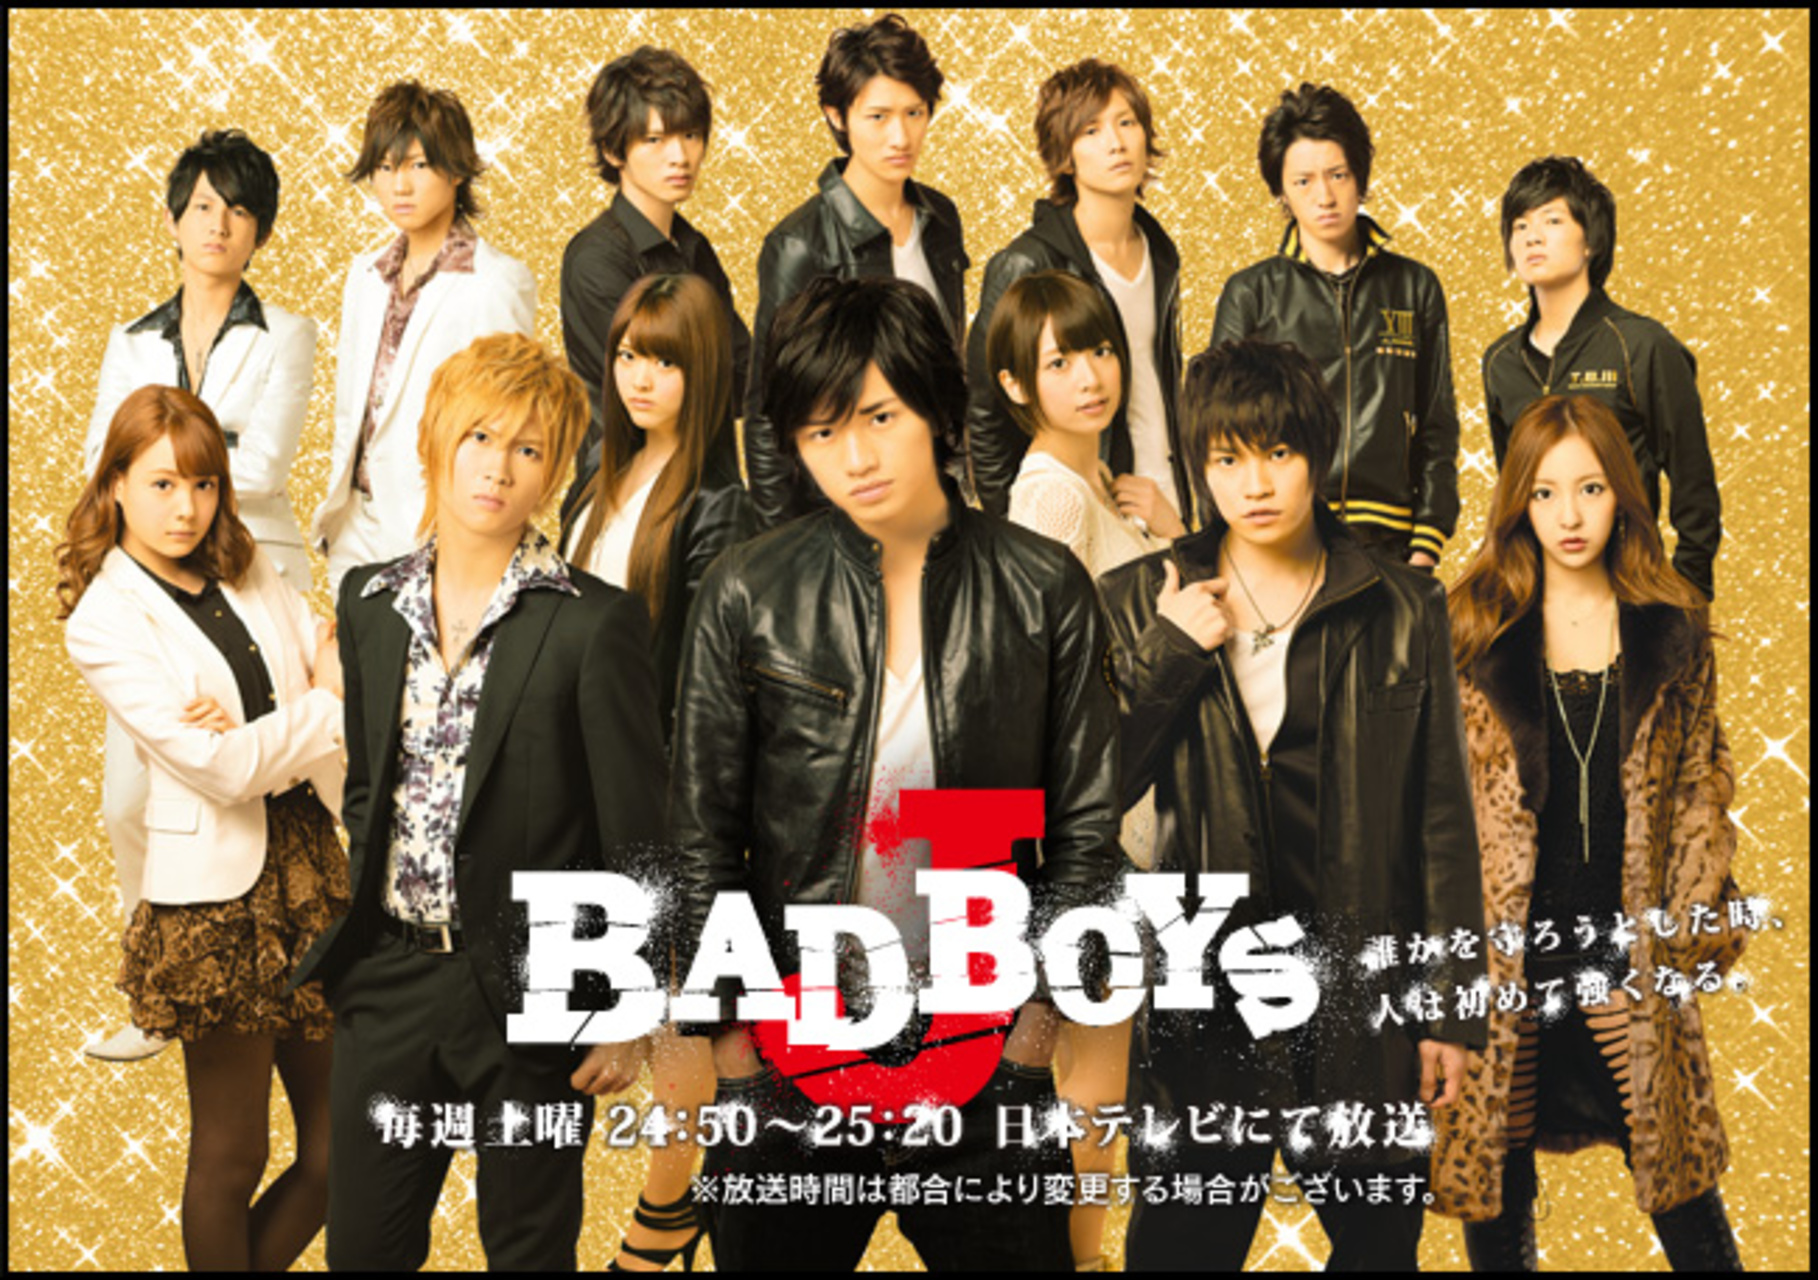 Bad Boys J - Drama-Otaku - Japanese Drama News